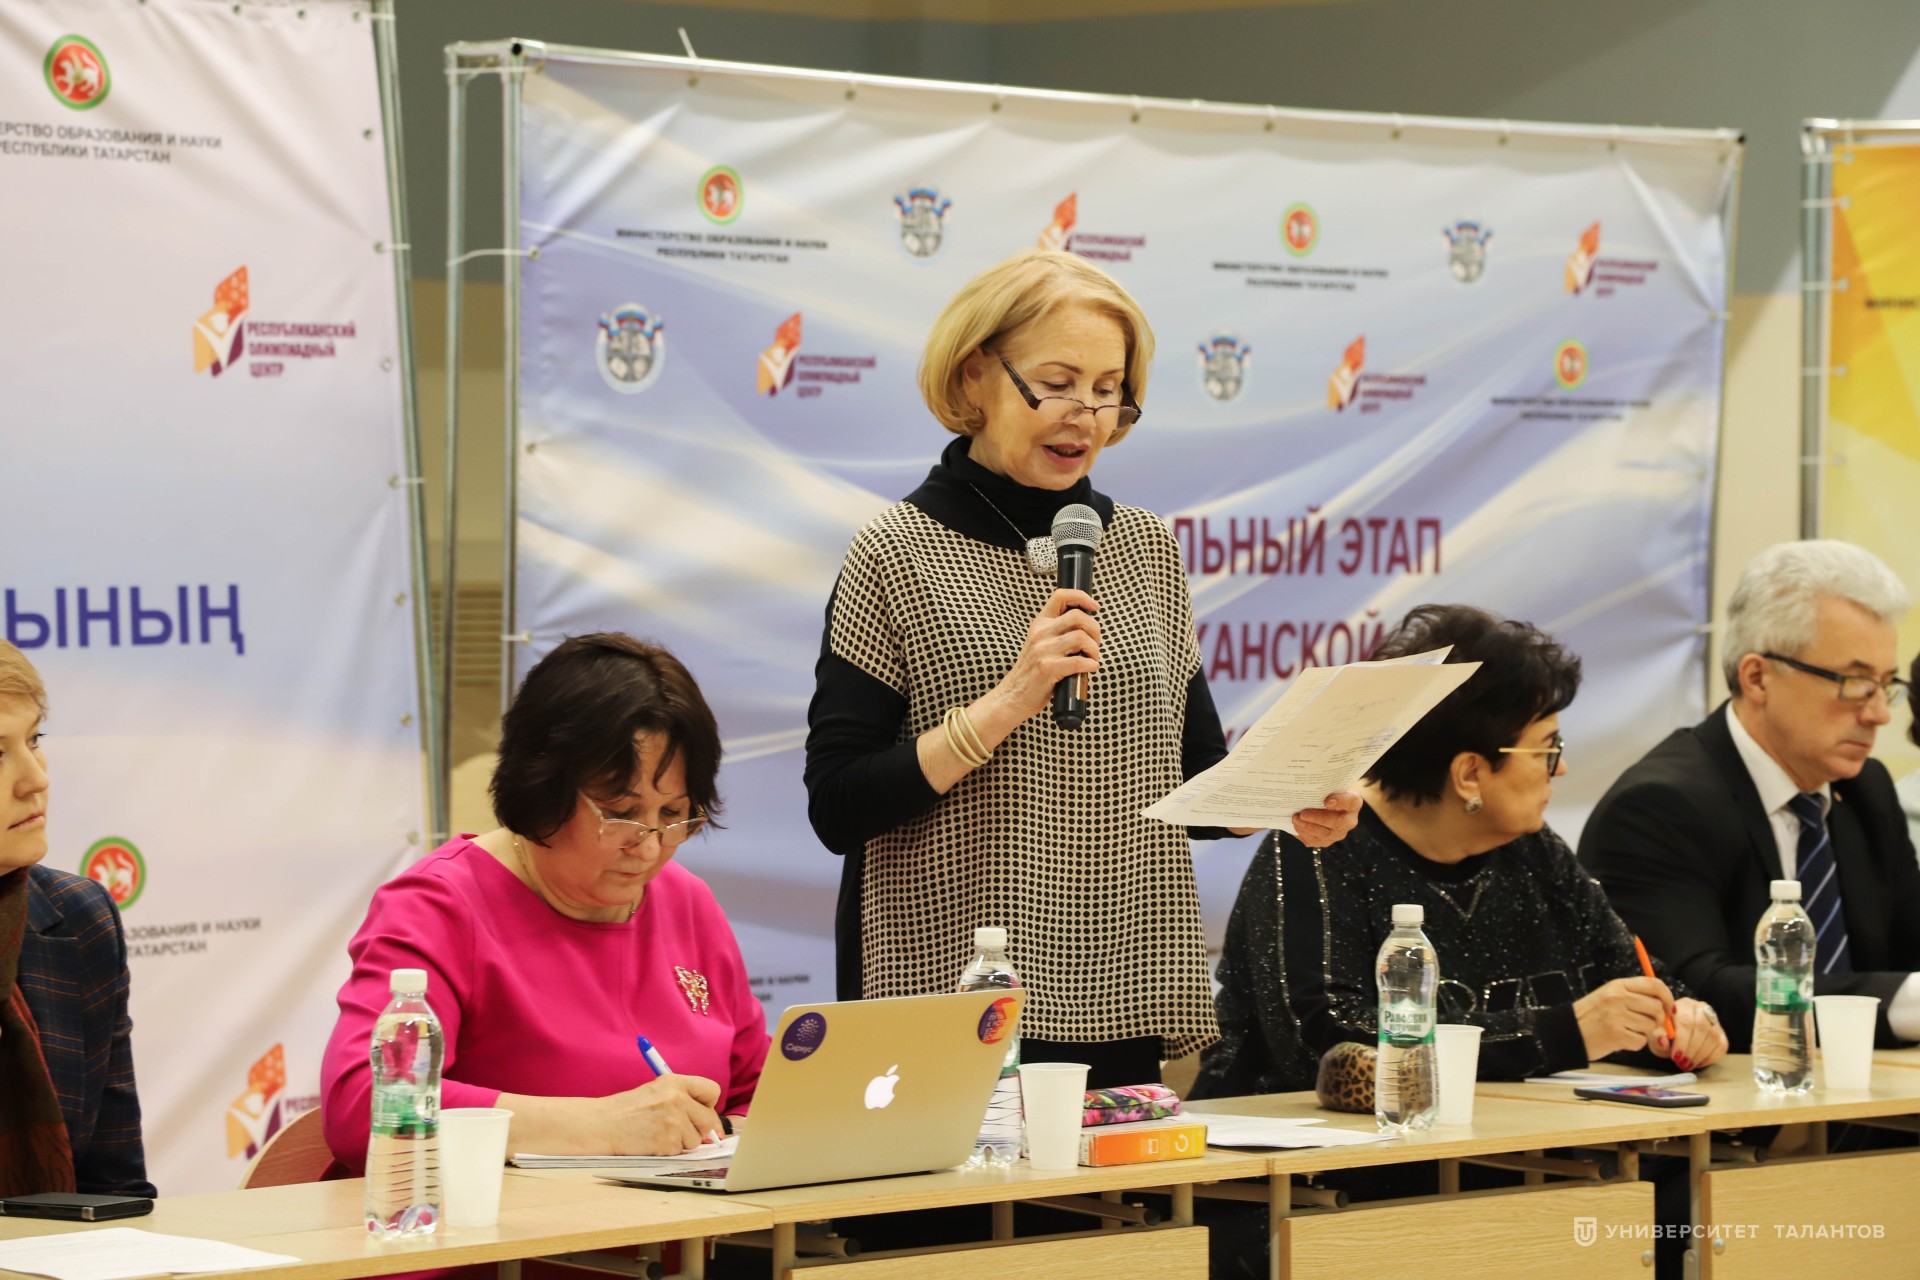 Татарстанские эксперты обсудили Республиканский центр выявления и поддержки одаренных детей и проект государственной программы «Стратегическое управление талантами на 2015-2025 годы»